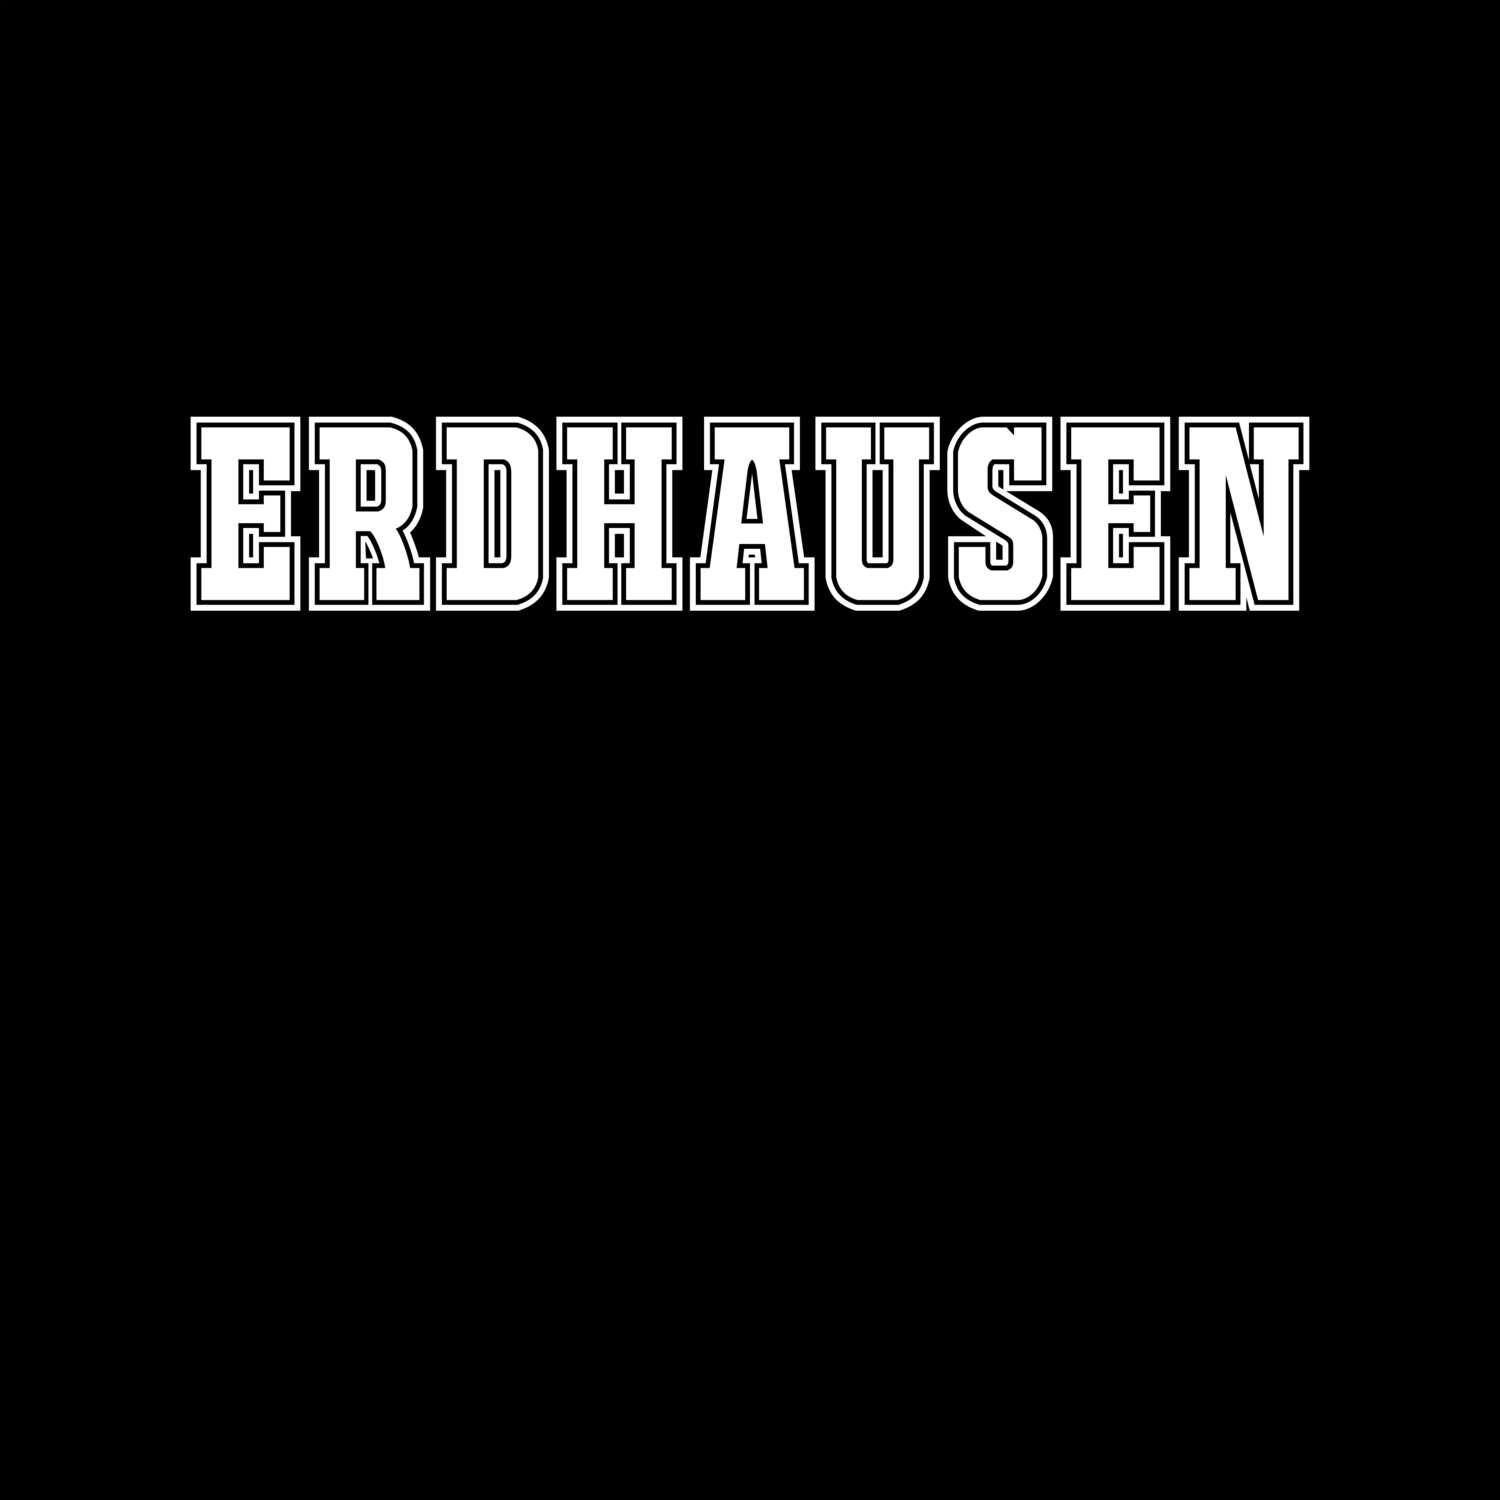 Erdhausen T-Shirt »Classic«